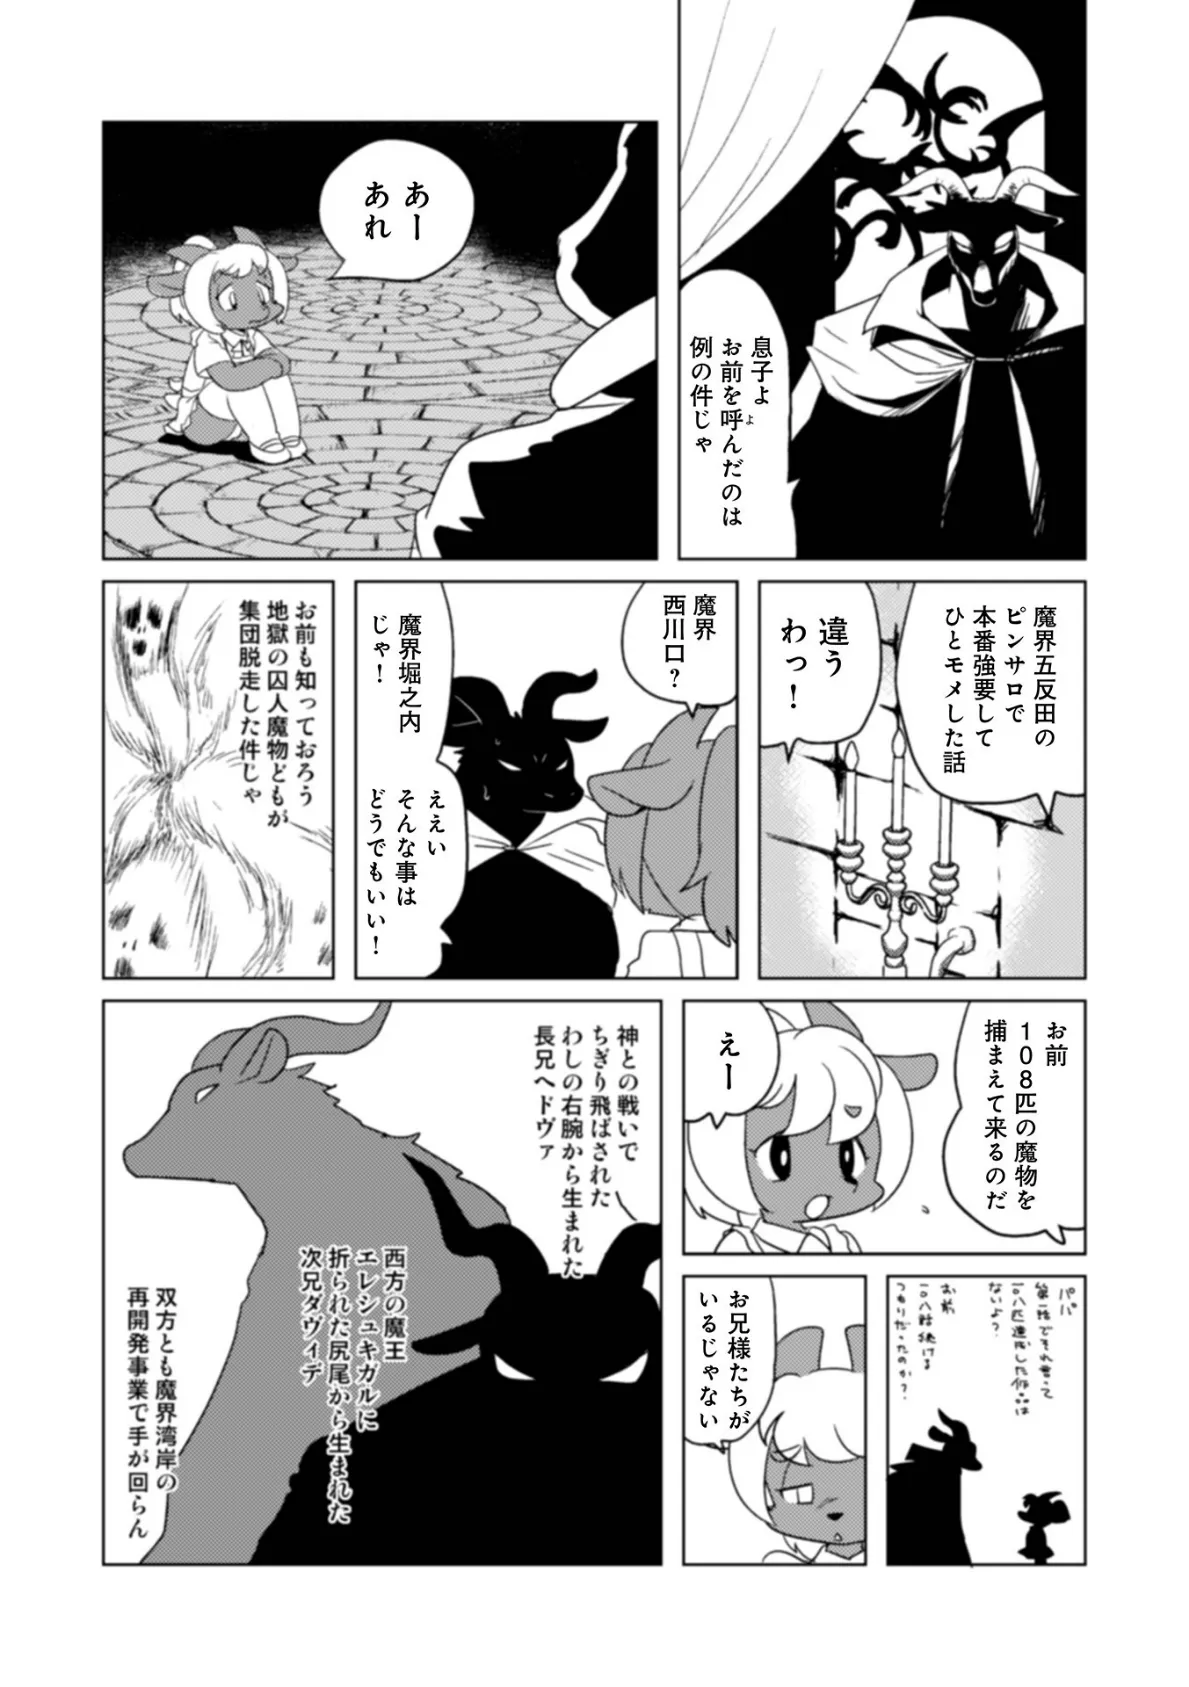 魔界探偵サバトくん第1巻 4ページ